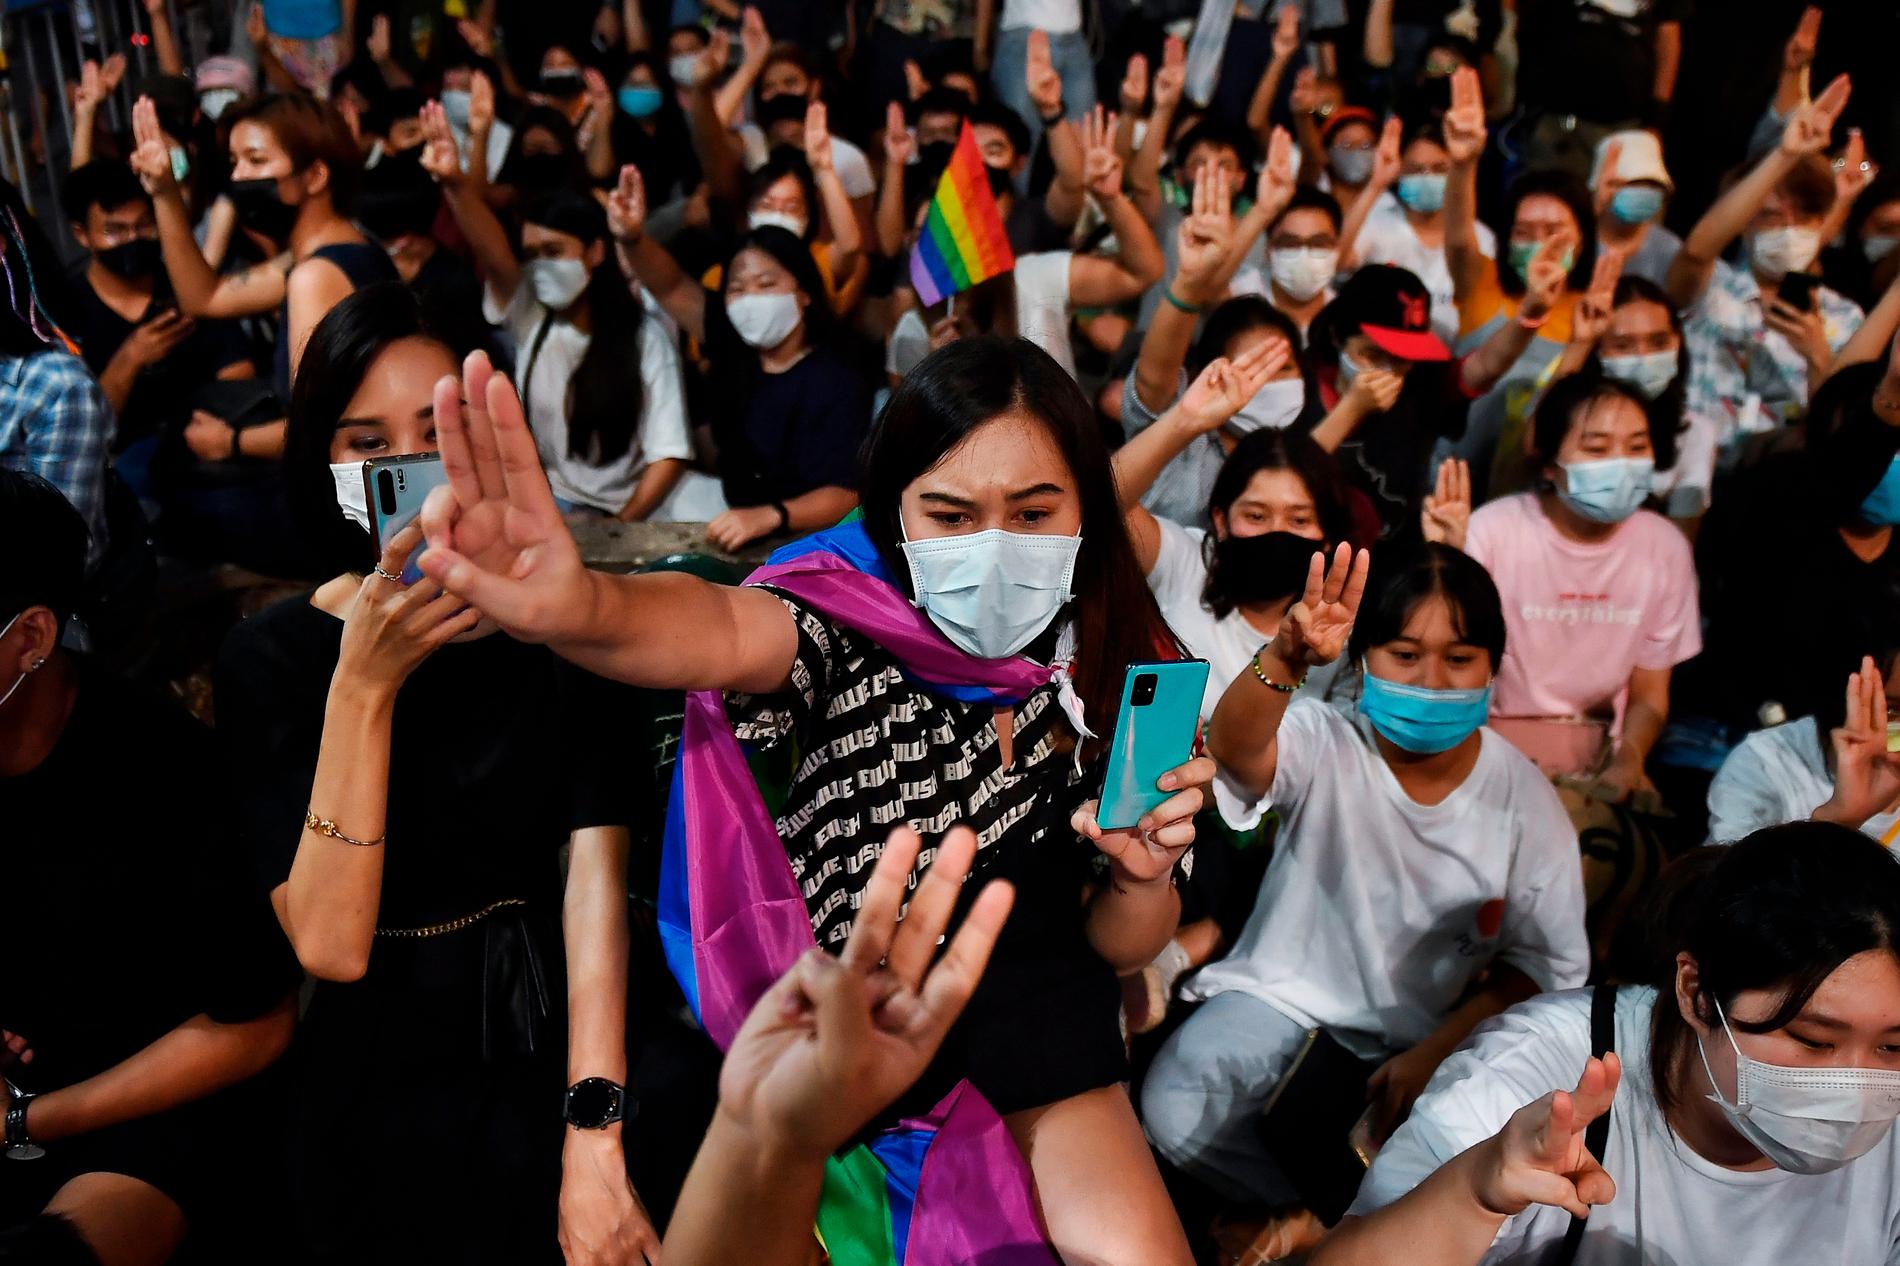 Populärkulturella symboler används vid regimkritiska demonstrationer i Thailand. Återkommande är hänvisningar, med tre fingrar i luften, till filmen Hunger games.